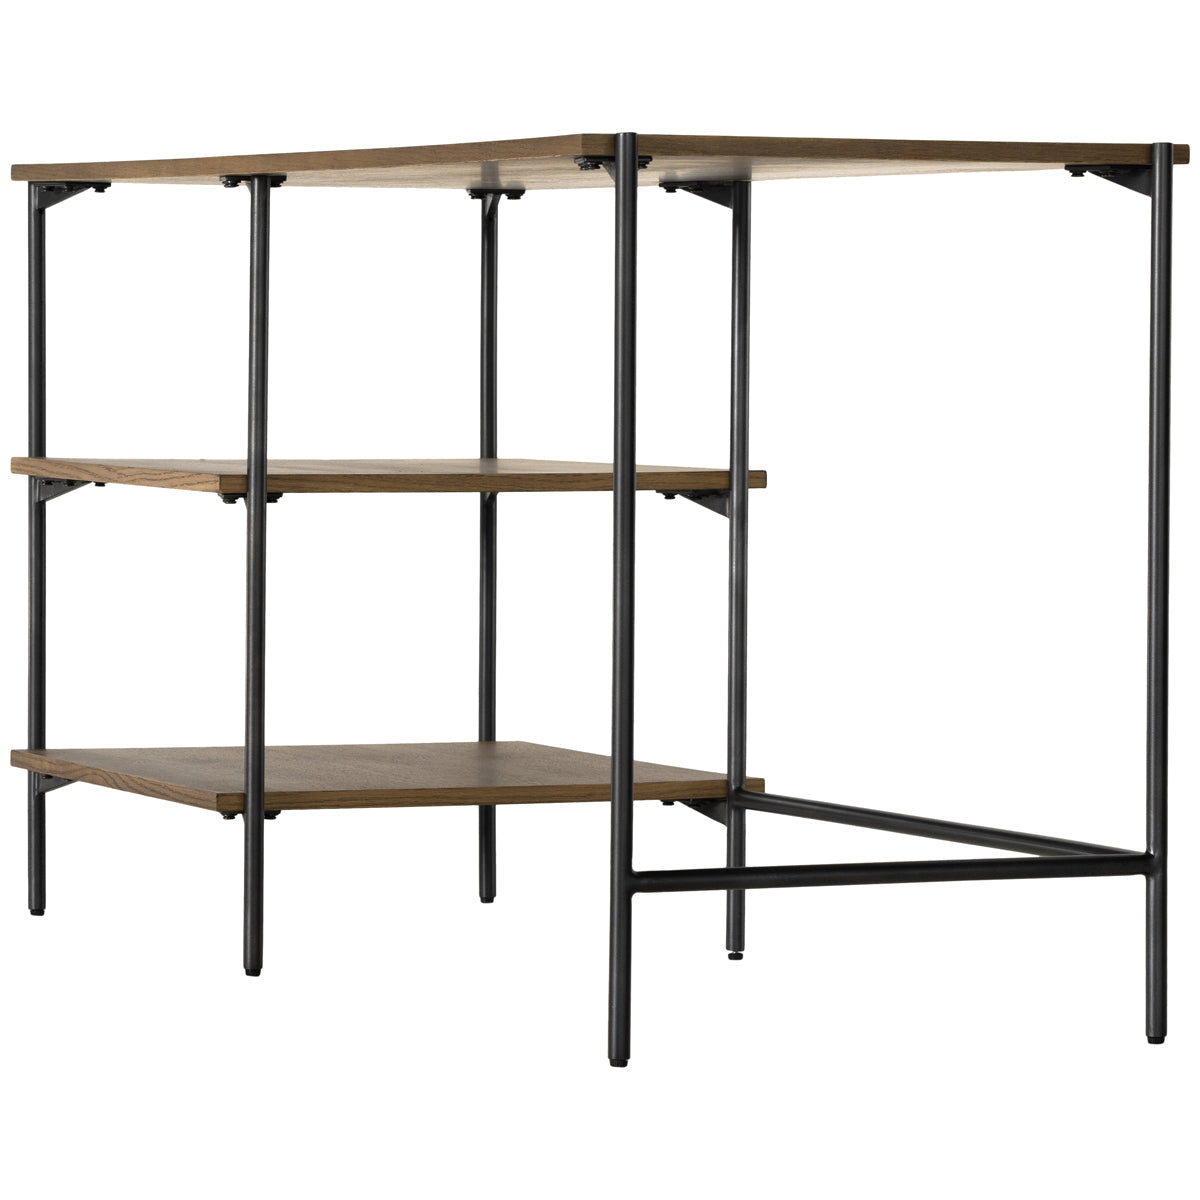 Four Hands Haiden Eaton Modular Desk with Shelves - Amber Oak Resin